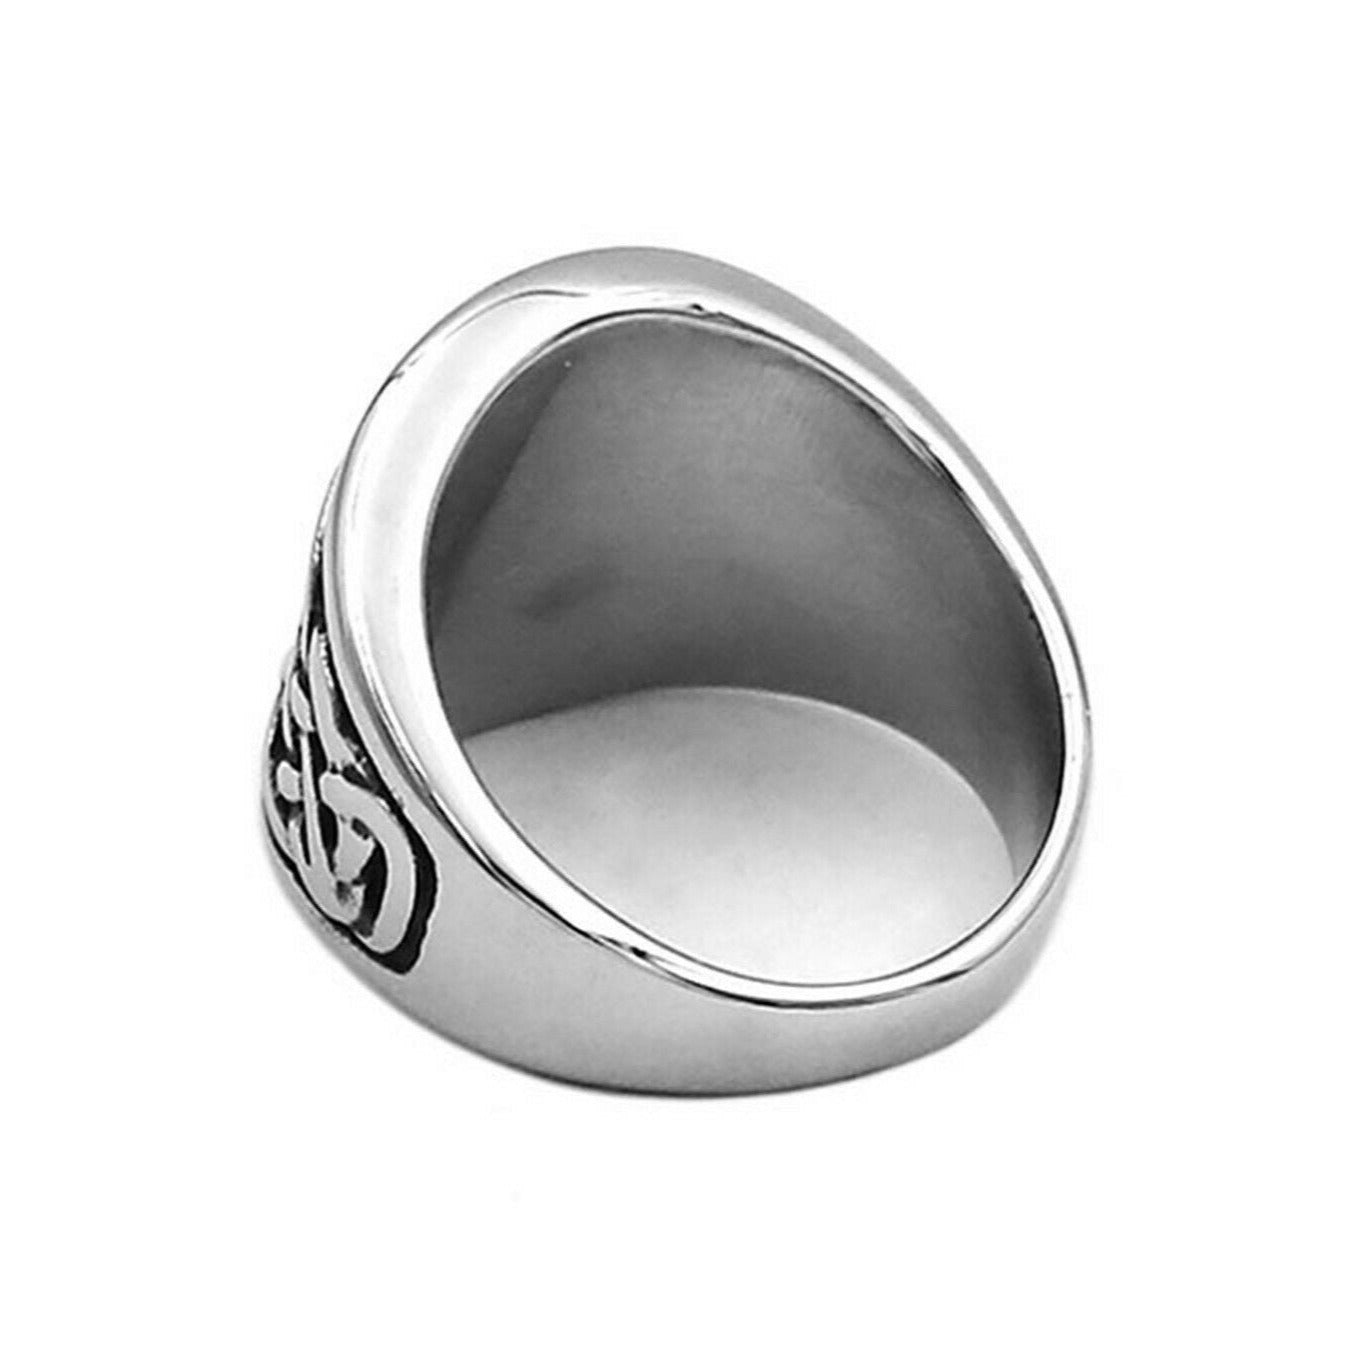 Vegvisir Celtic Knot Viking Ring